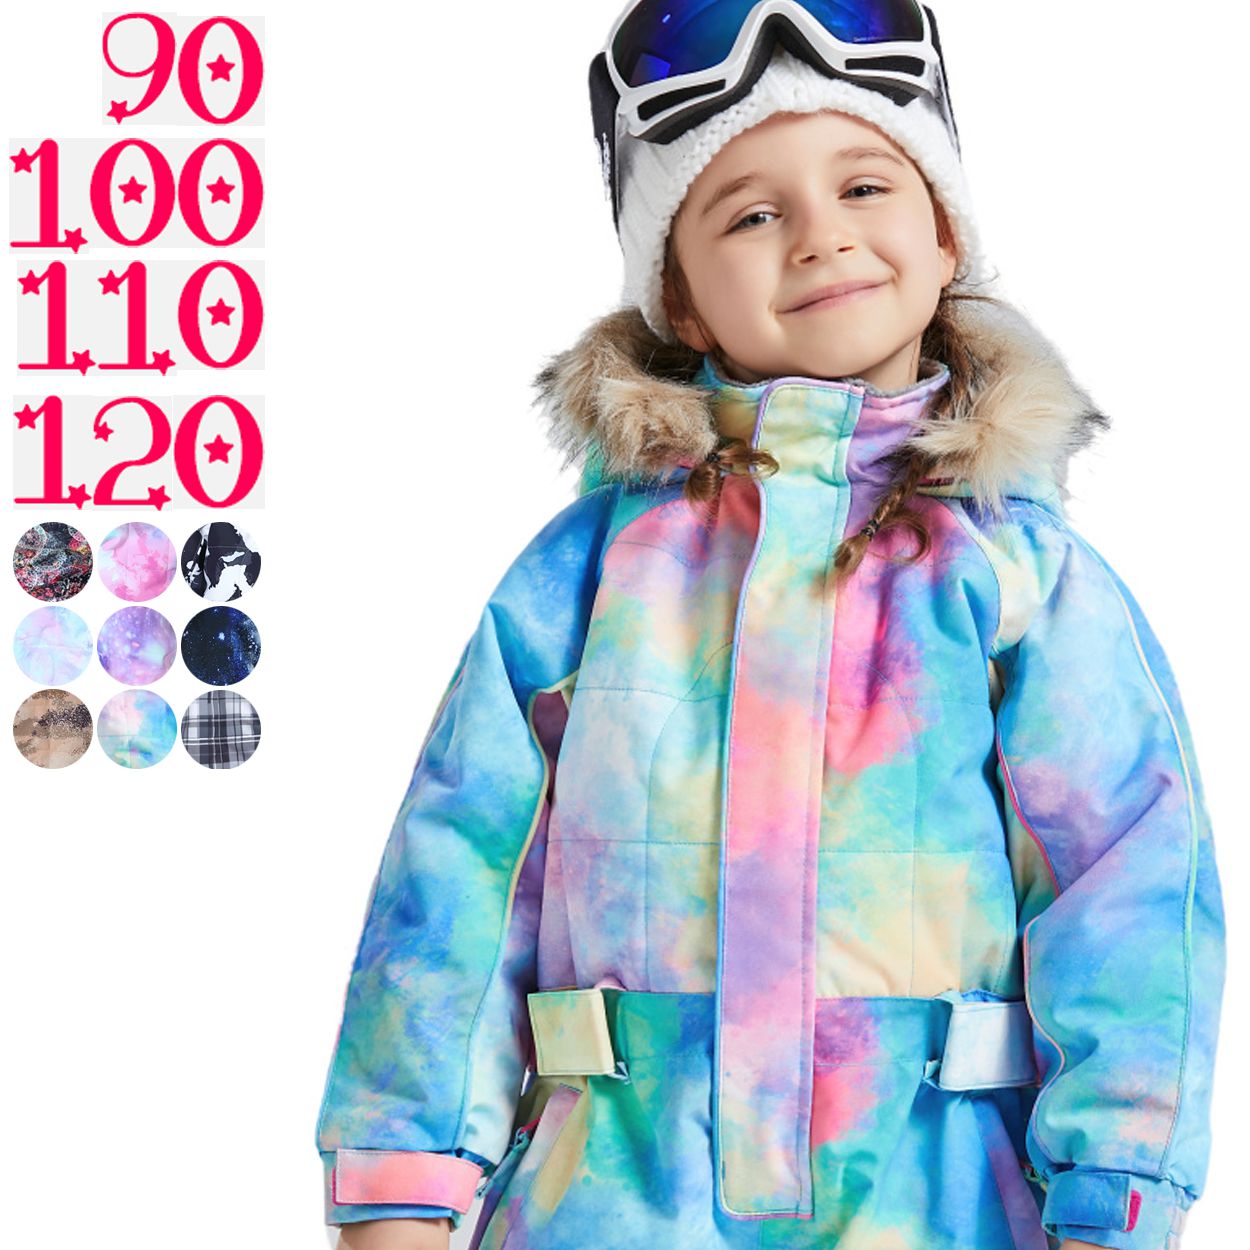 スキーウェア90の商品一覧 通販 - Yahoo!ショッピング